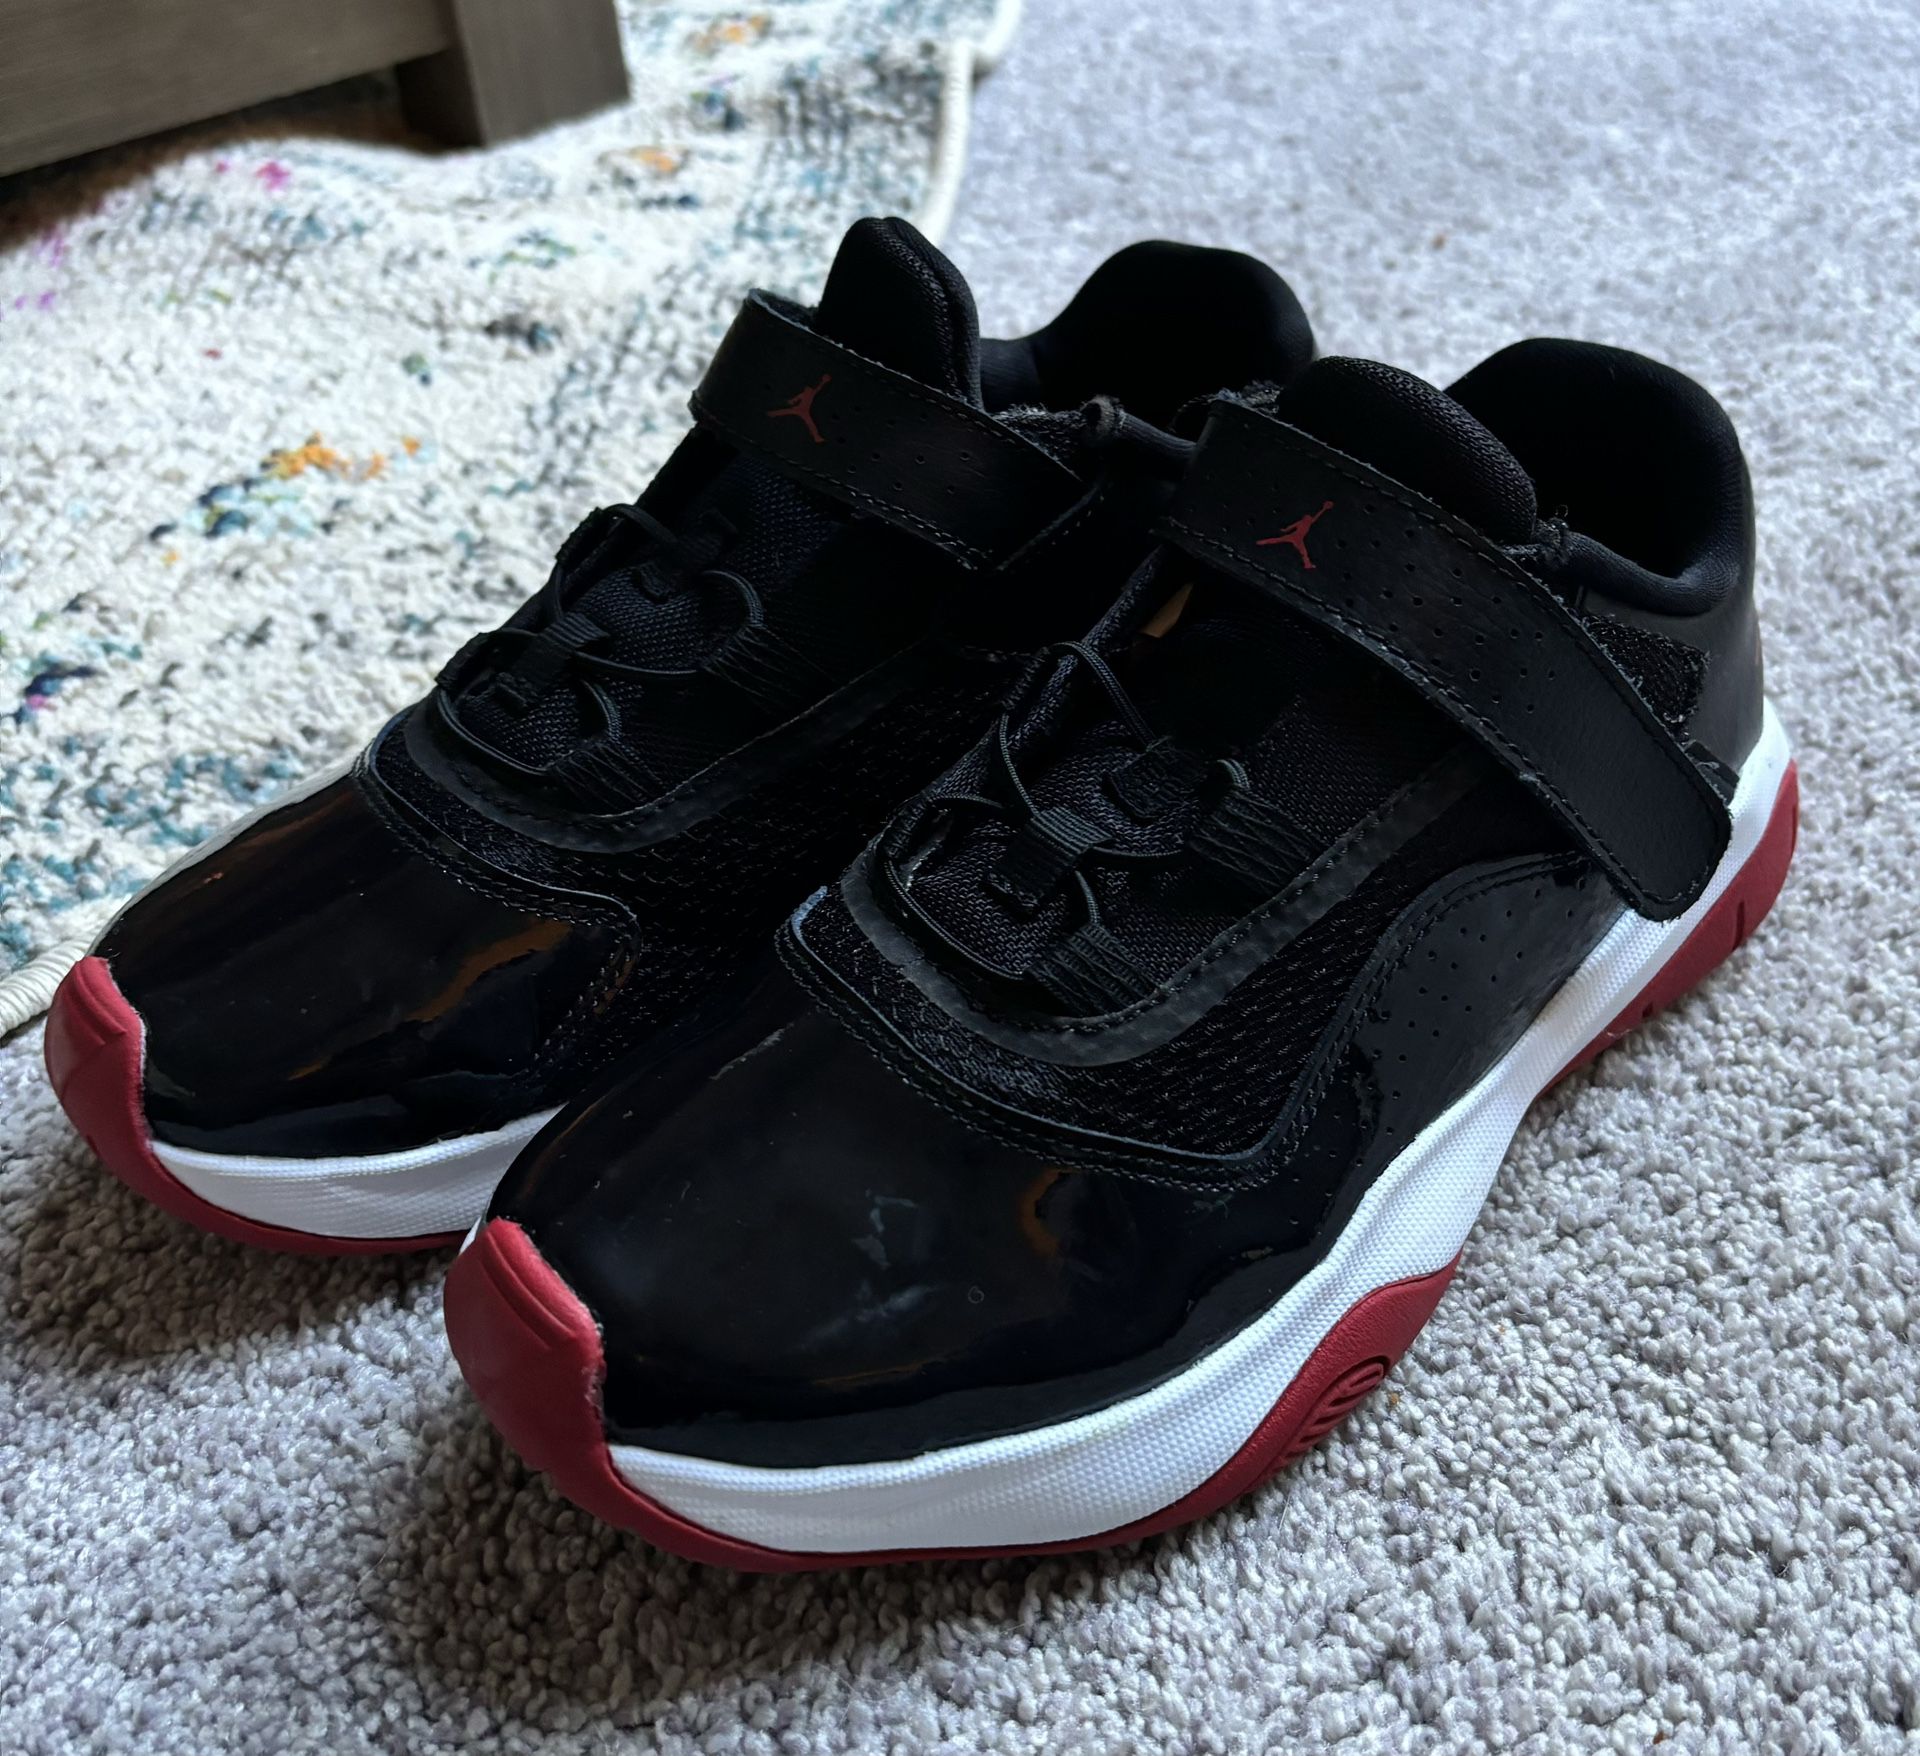 Jordan 11 Size 3